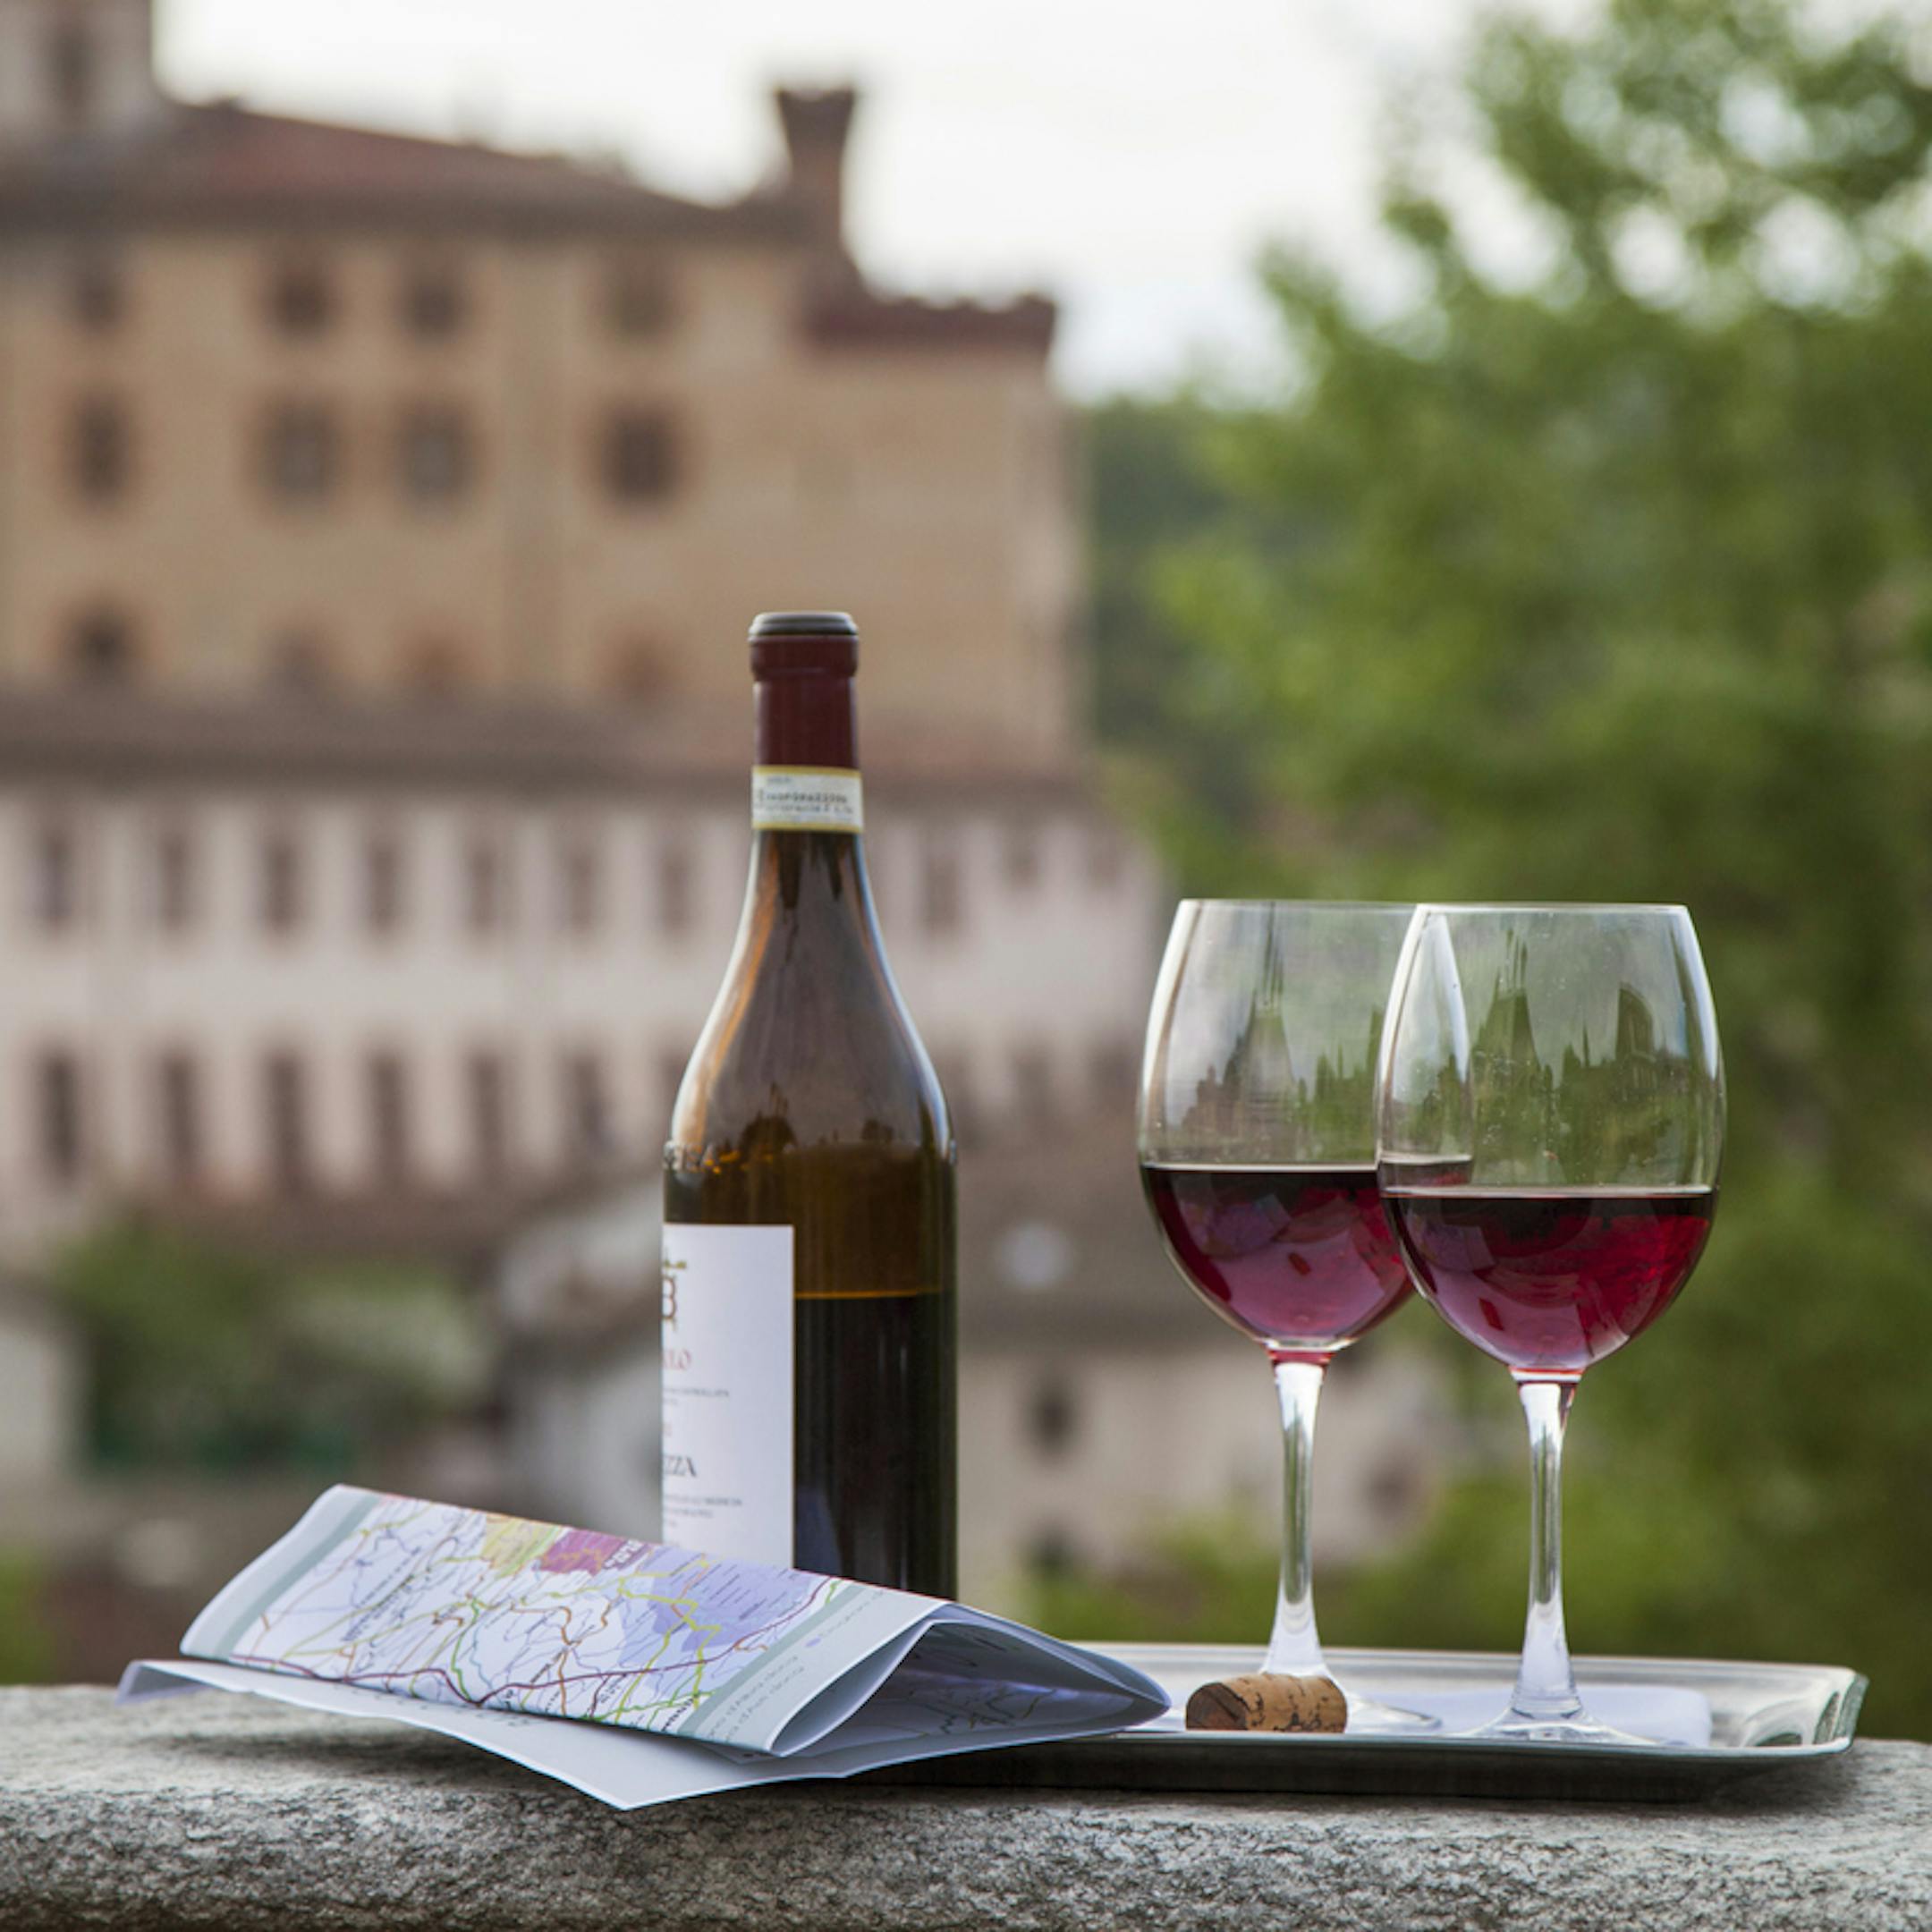 Bouteille de vin accompagnée de deux verres et d'une carte lors d'une dégustation dans un lieu pittoresque